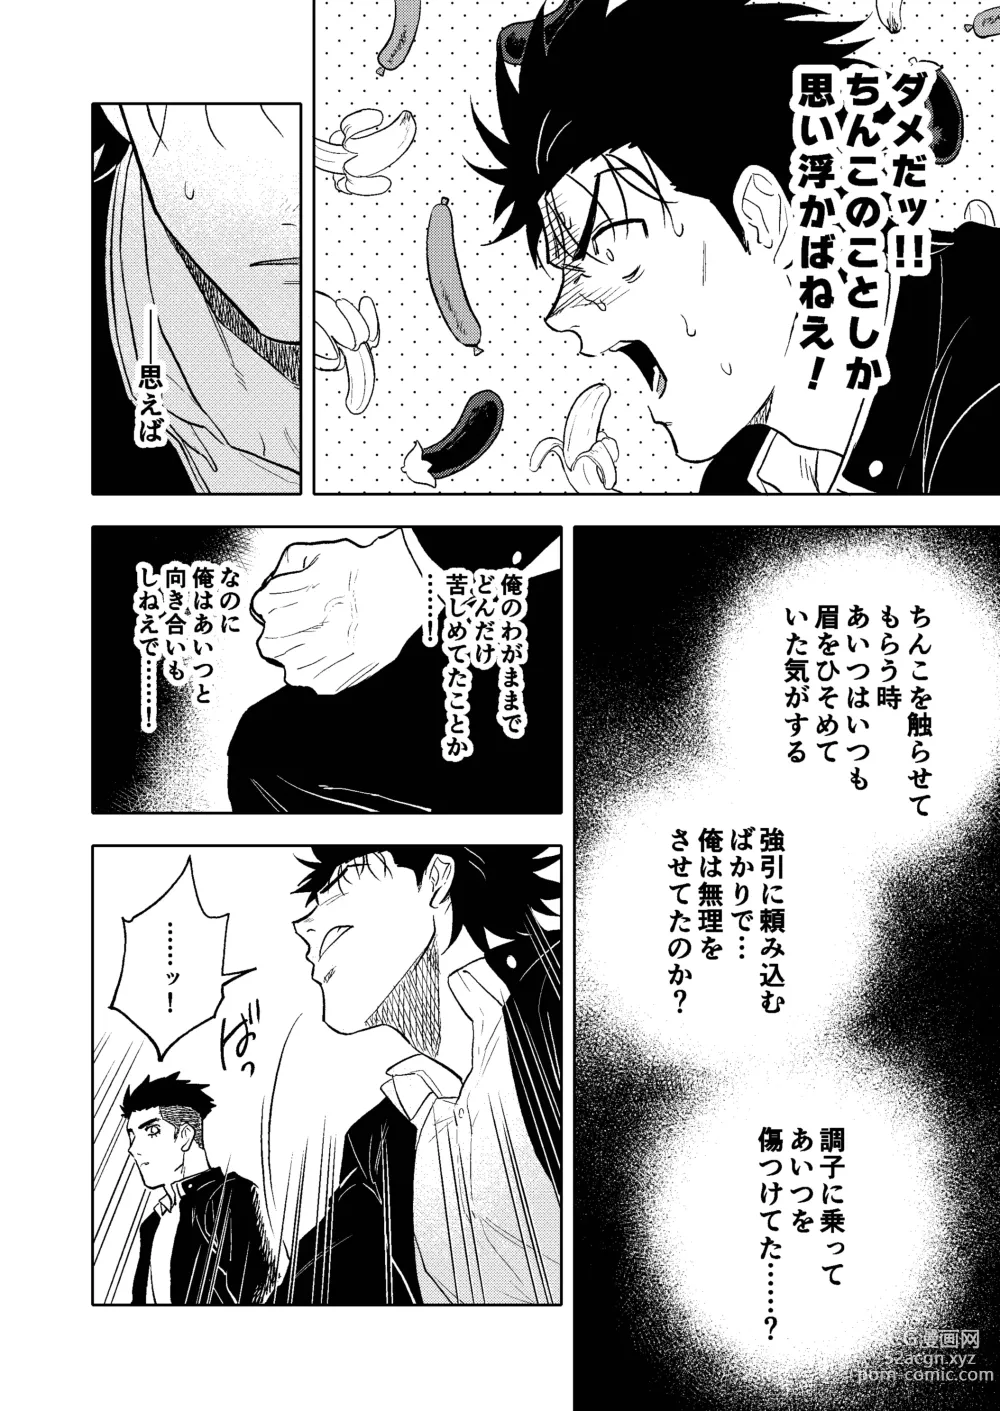 Page 13 of doujinshi Dainarishounari 2